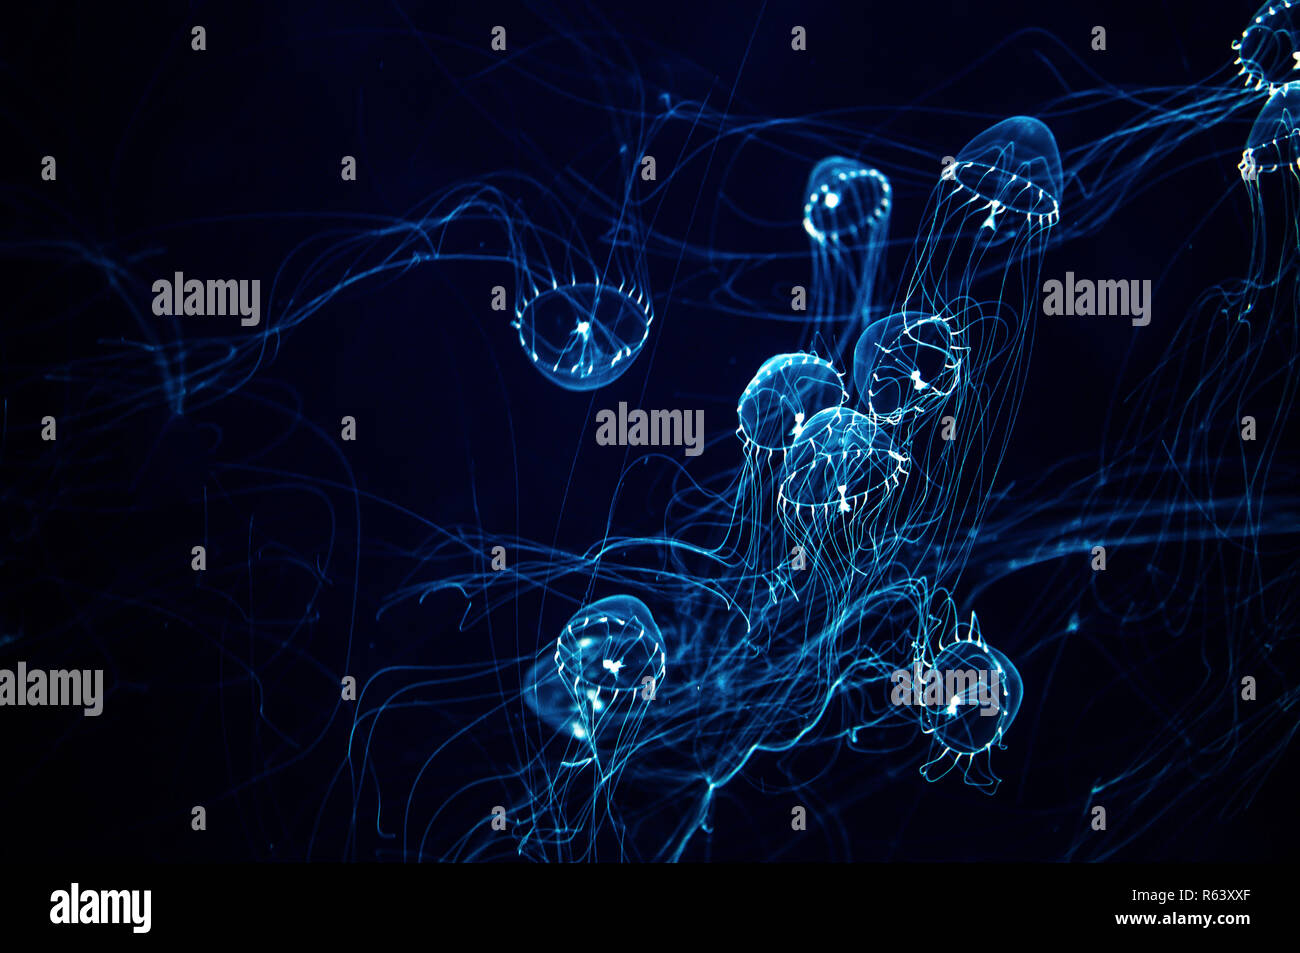 Trasparente, glow in the dark medusa con lunghi tentacoli Foto Stock